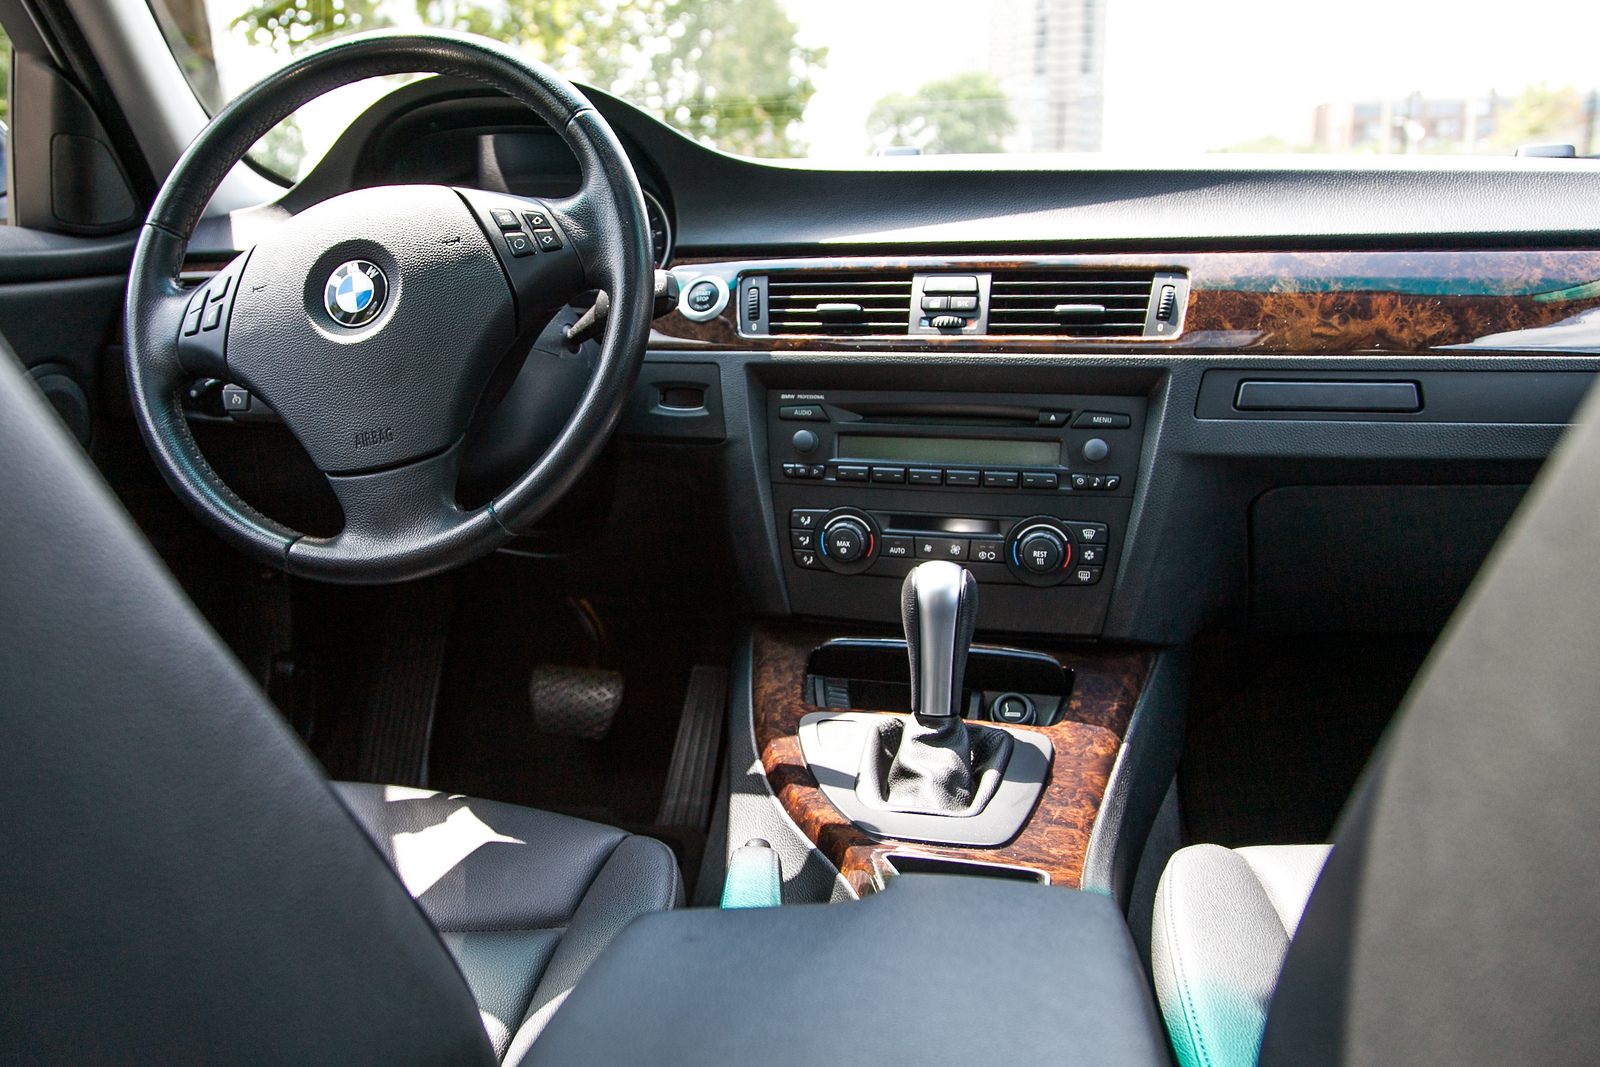 2006 BMW 325i Interior (8) | Flickr - Photo Sharing!